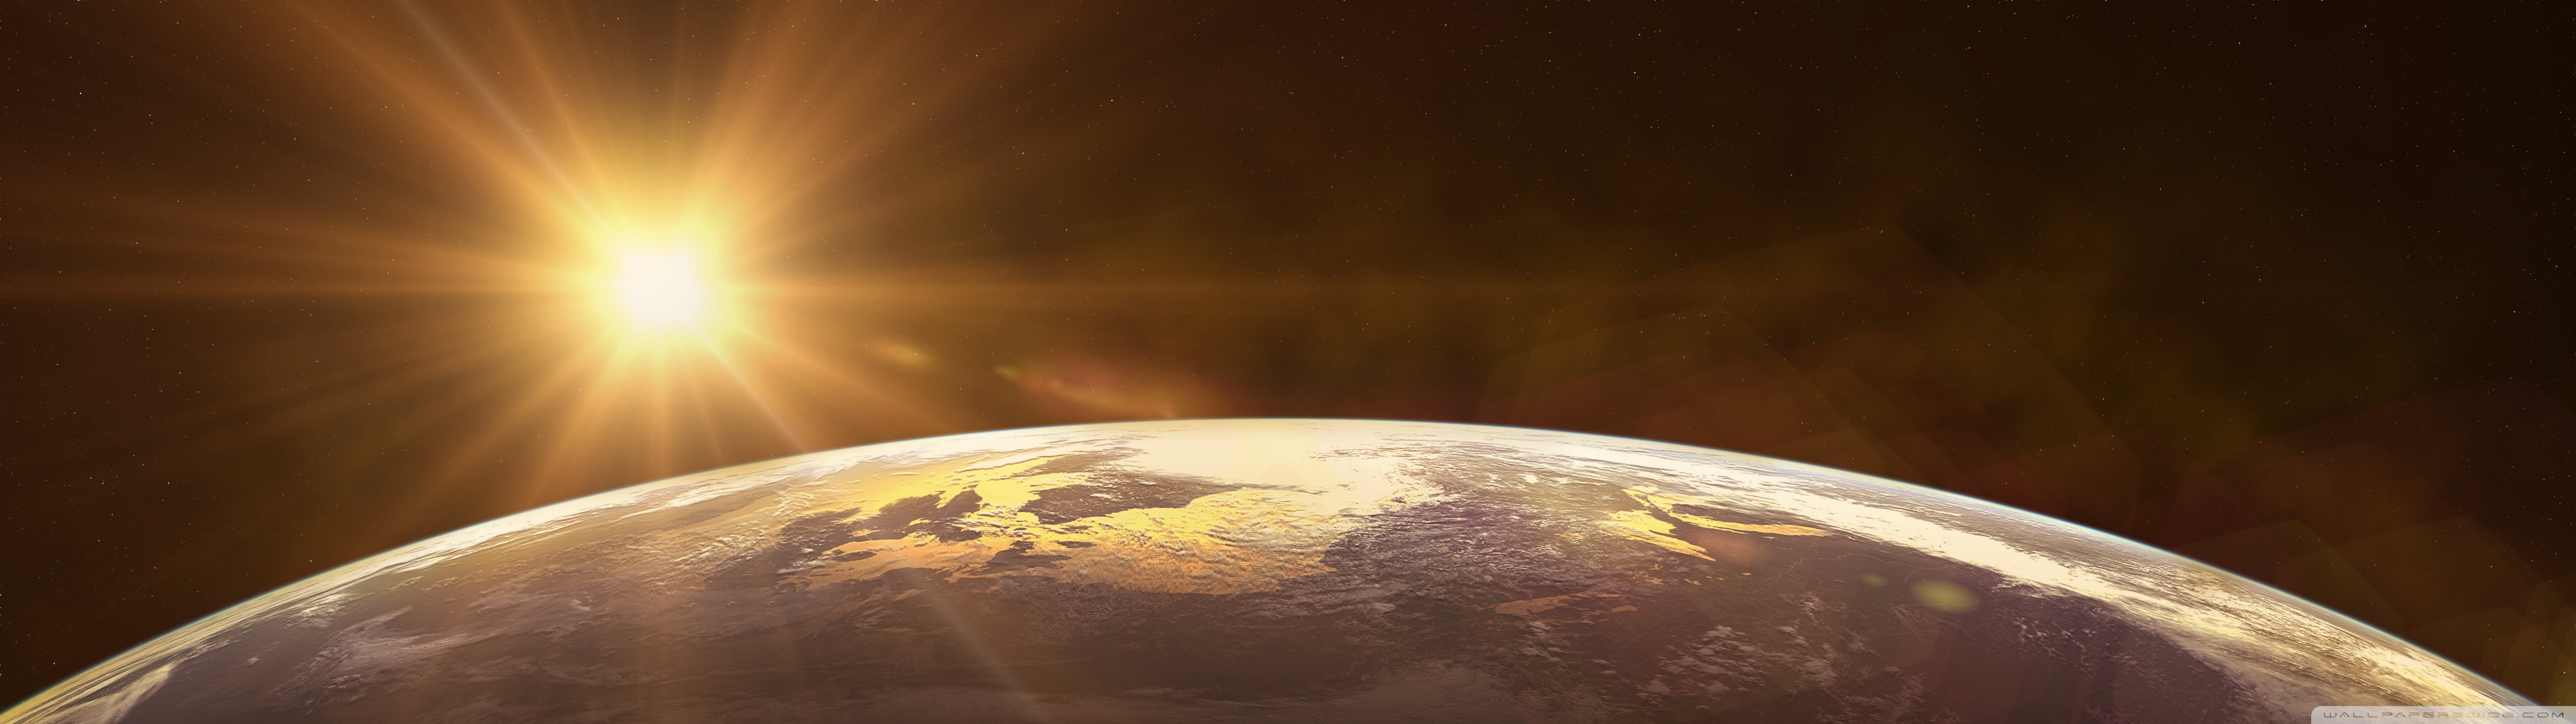 듀얼 모니터 벽지,분위기,행성,대기권 밖,지구,하늘